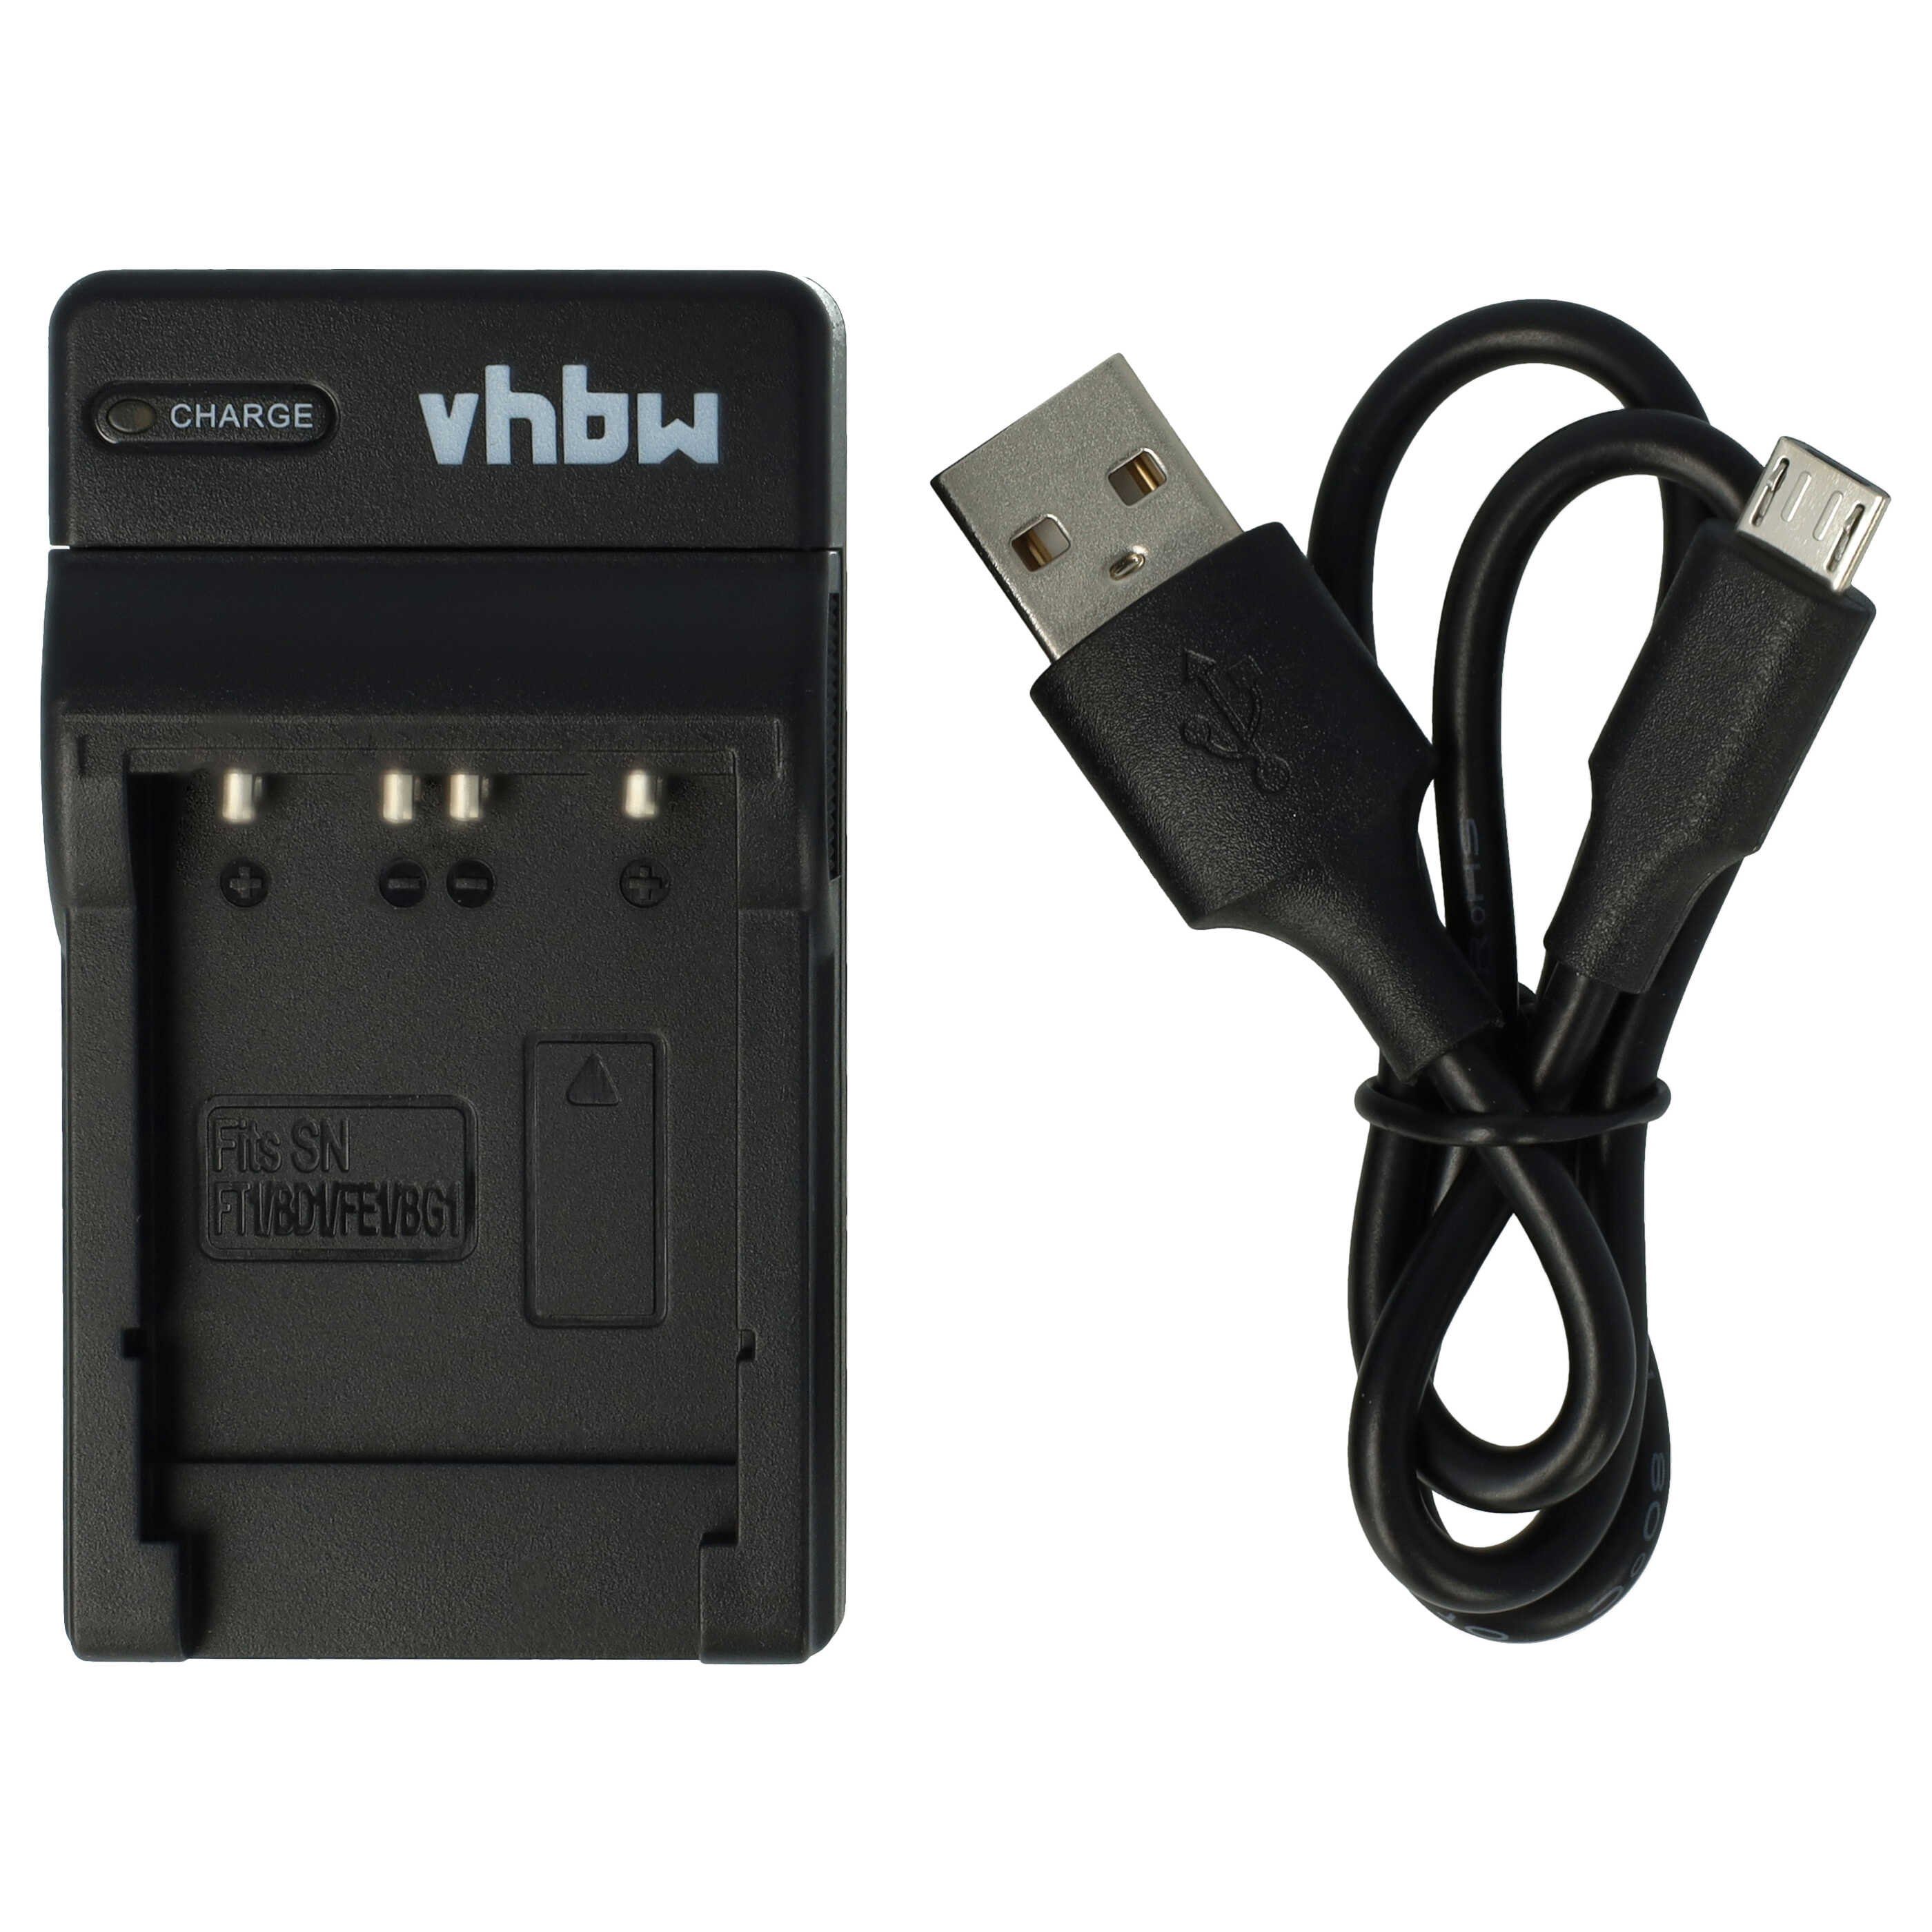 vhbw passend für Sony Cybershot DSC-P200/S, DSC-T10, DSC-P200, DSC-T1, Kamera-Ladegerät